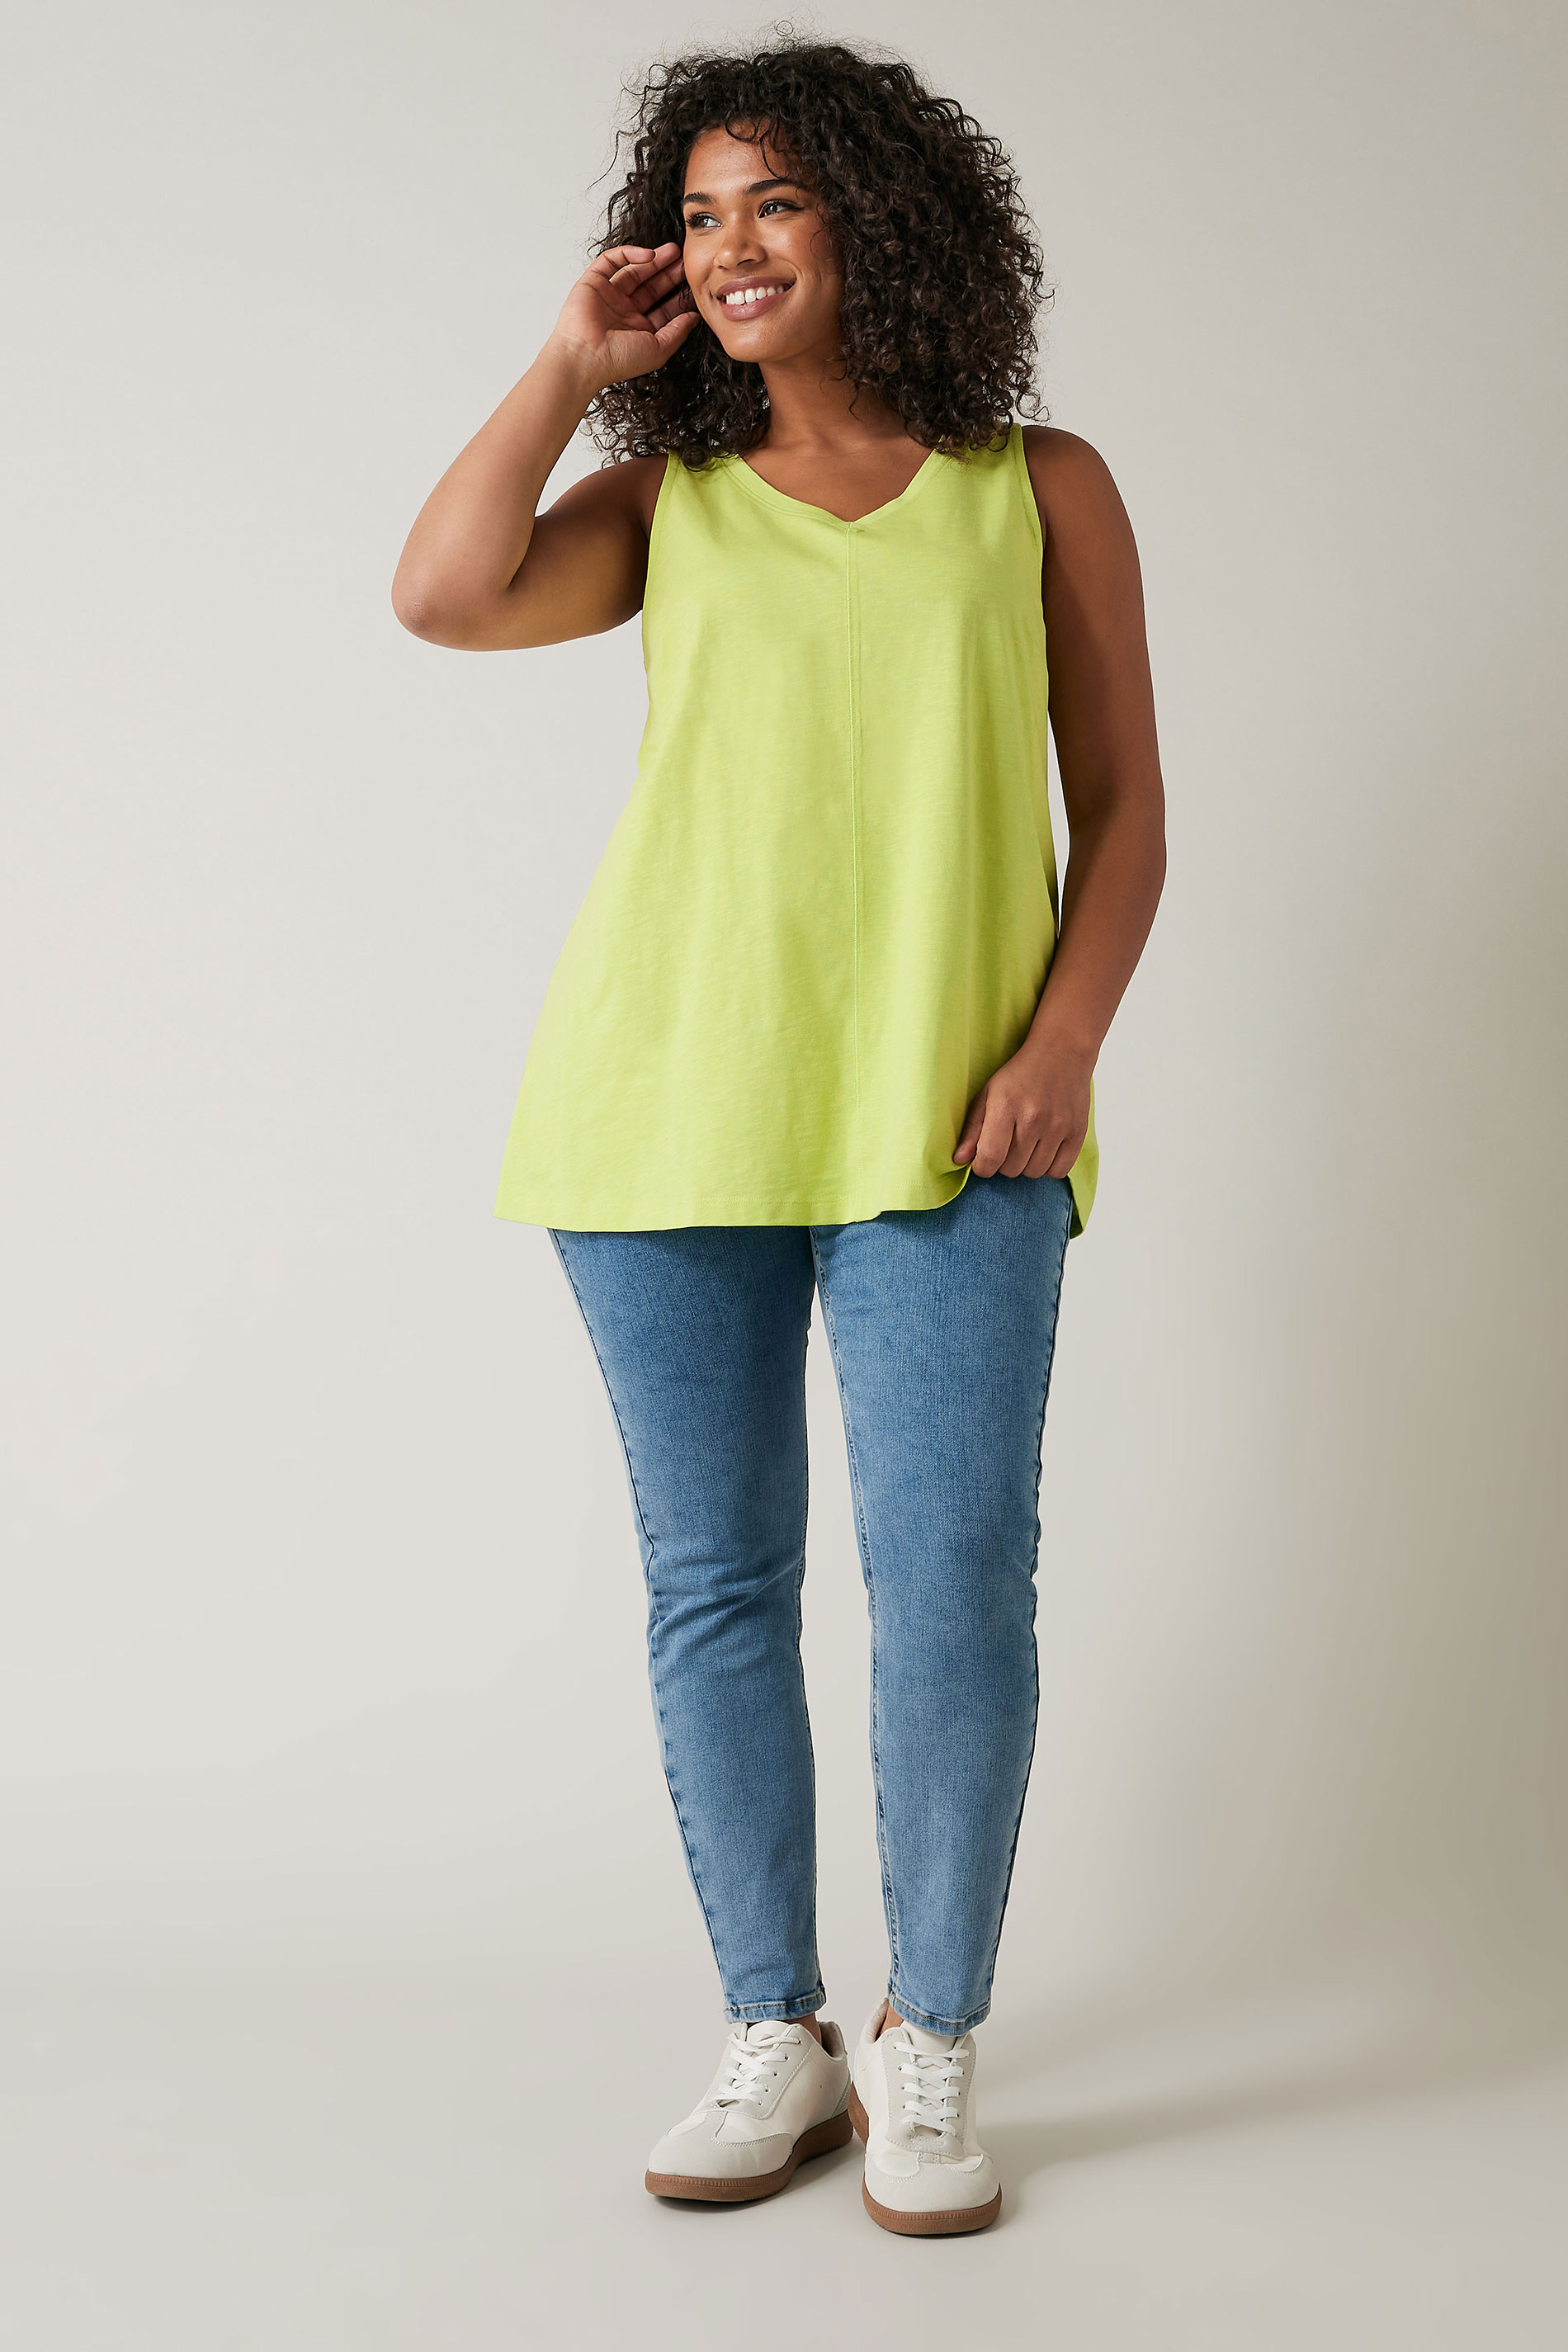 Evans Plus Size Chartreuse Green Cotton Vest Top | Evans 2